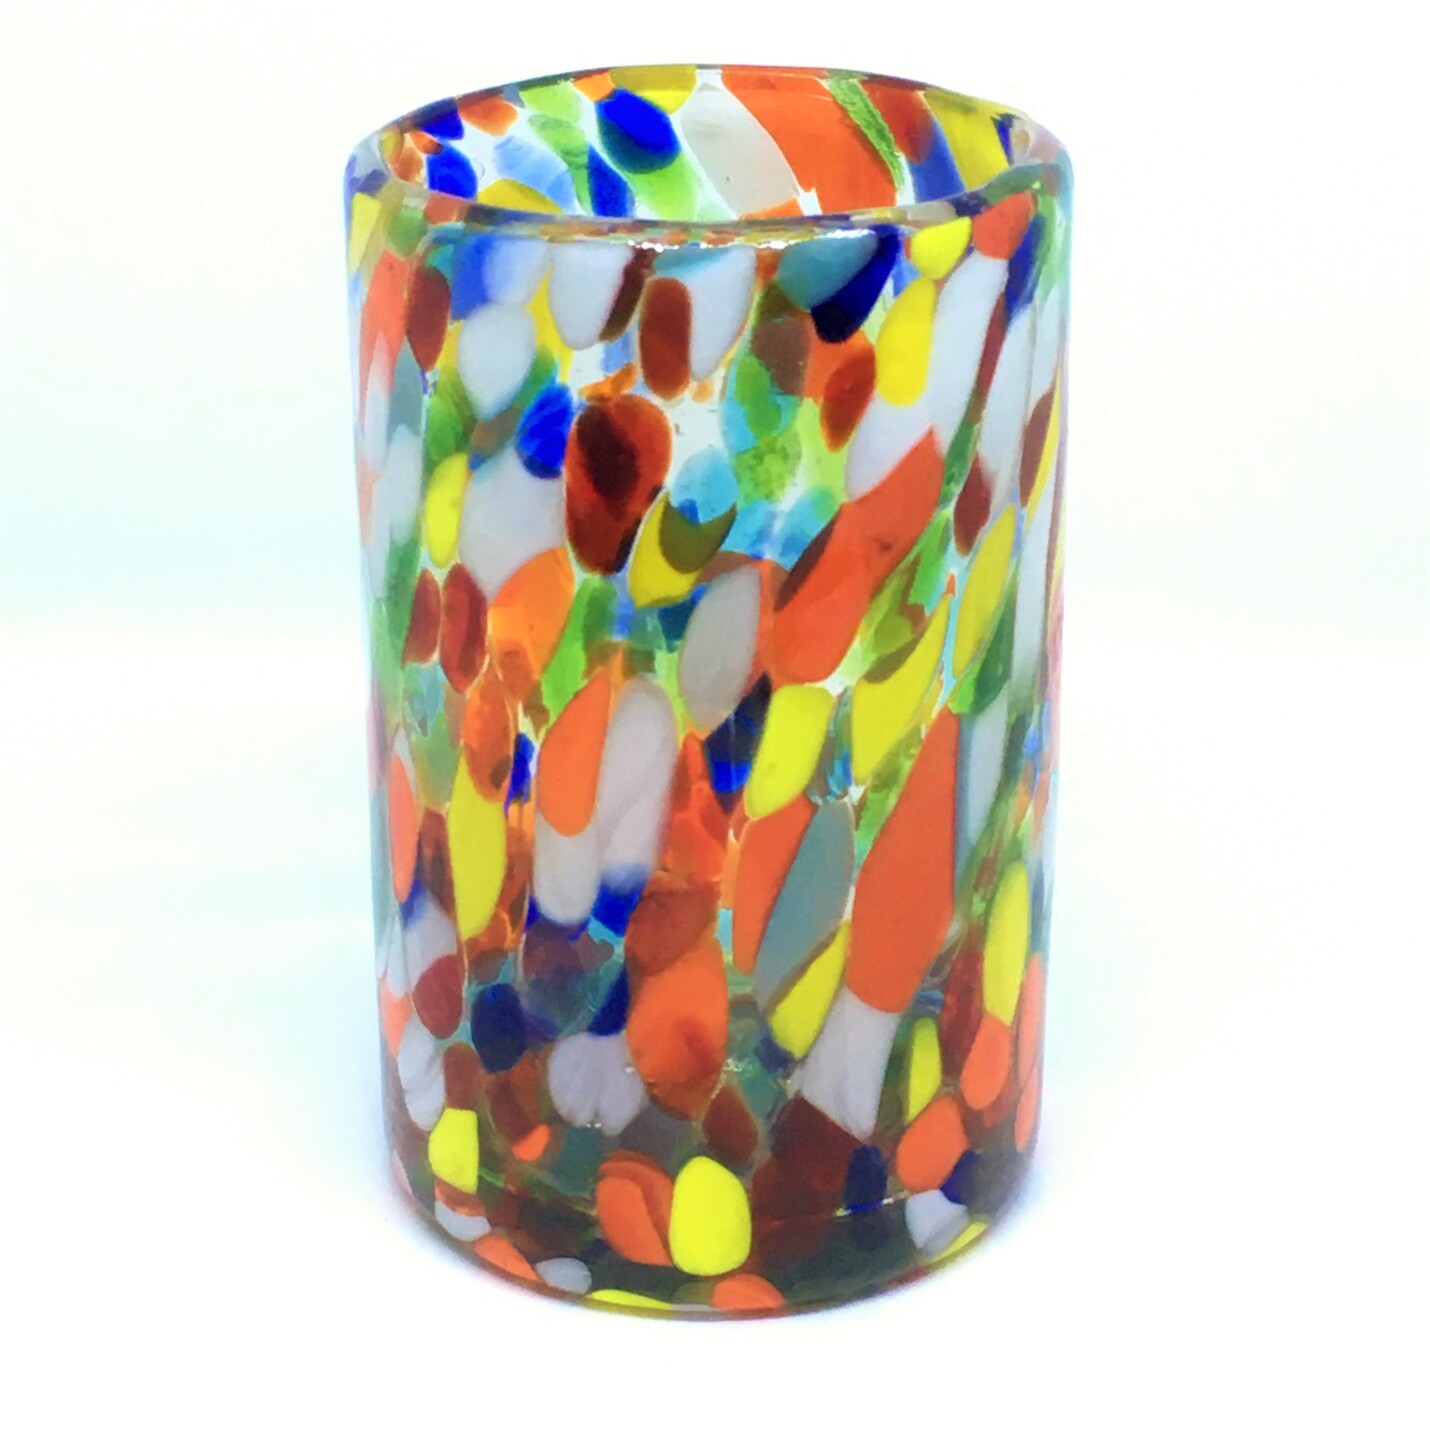 Estilo Confeti al Mayoreo / vasos grandes 'Confeti Carnaval' / Deje entrar a la primavera en su casa con éste colorido juego de vasos. El decorado con vidrio multicolor los hace resaltar en cualquier lugar.